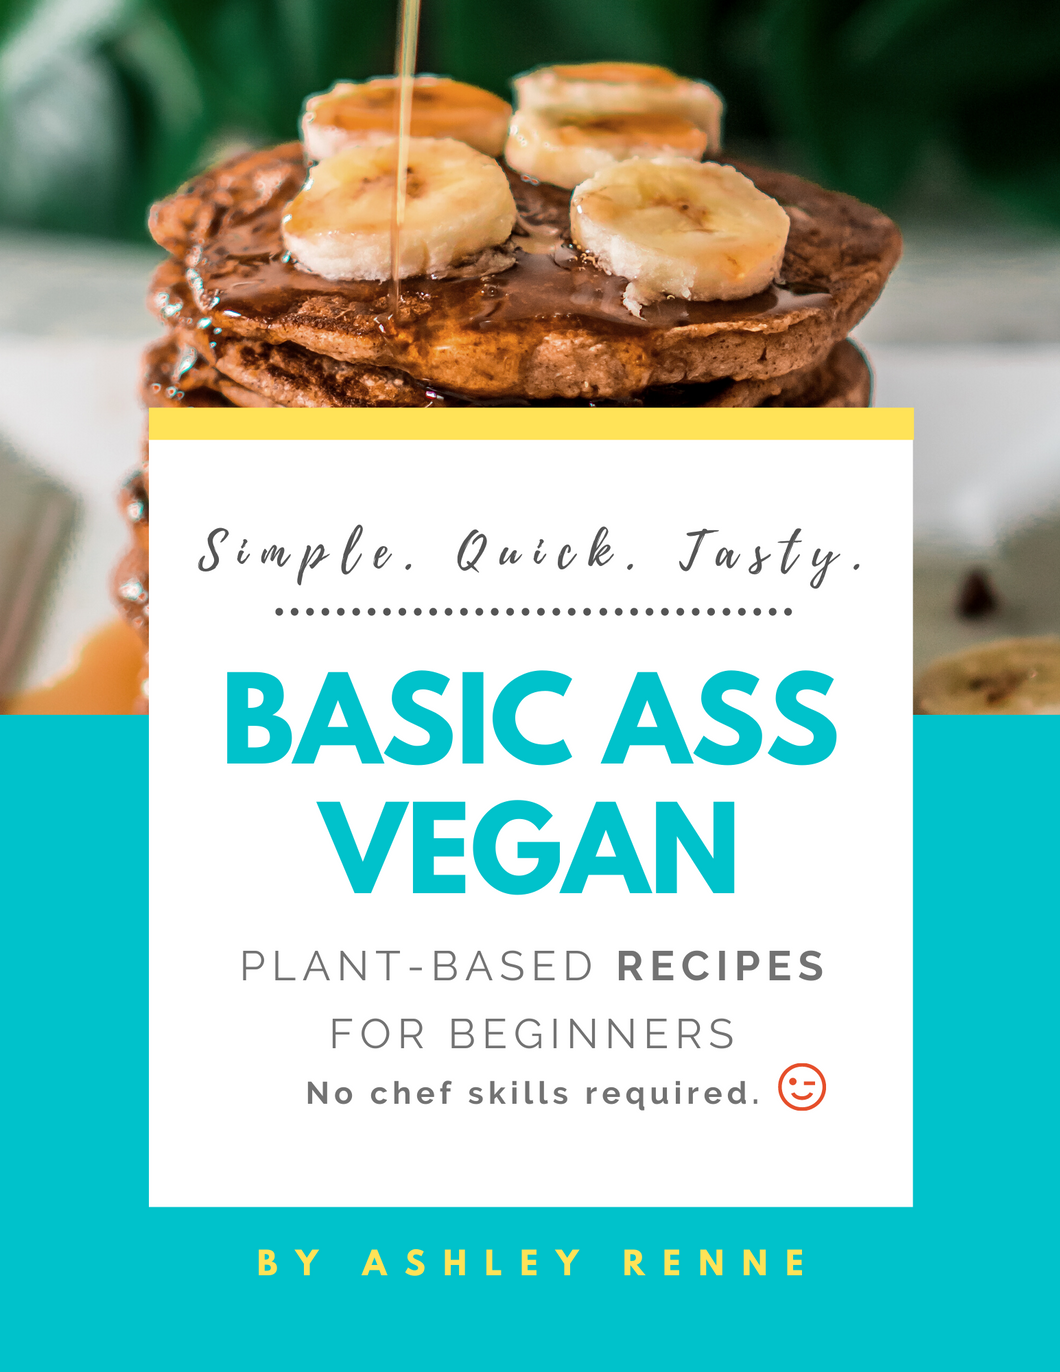 Basic Ass Vegan: Plant-Based Recipes for Beginners